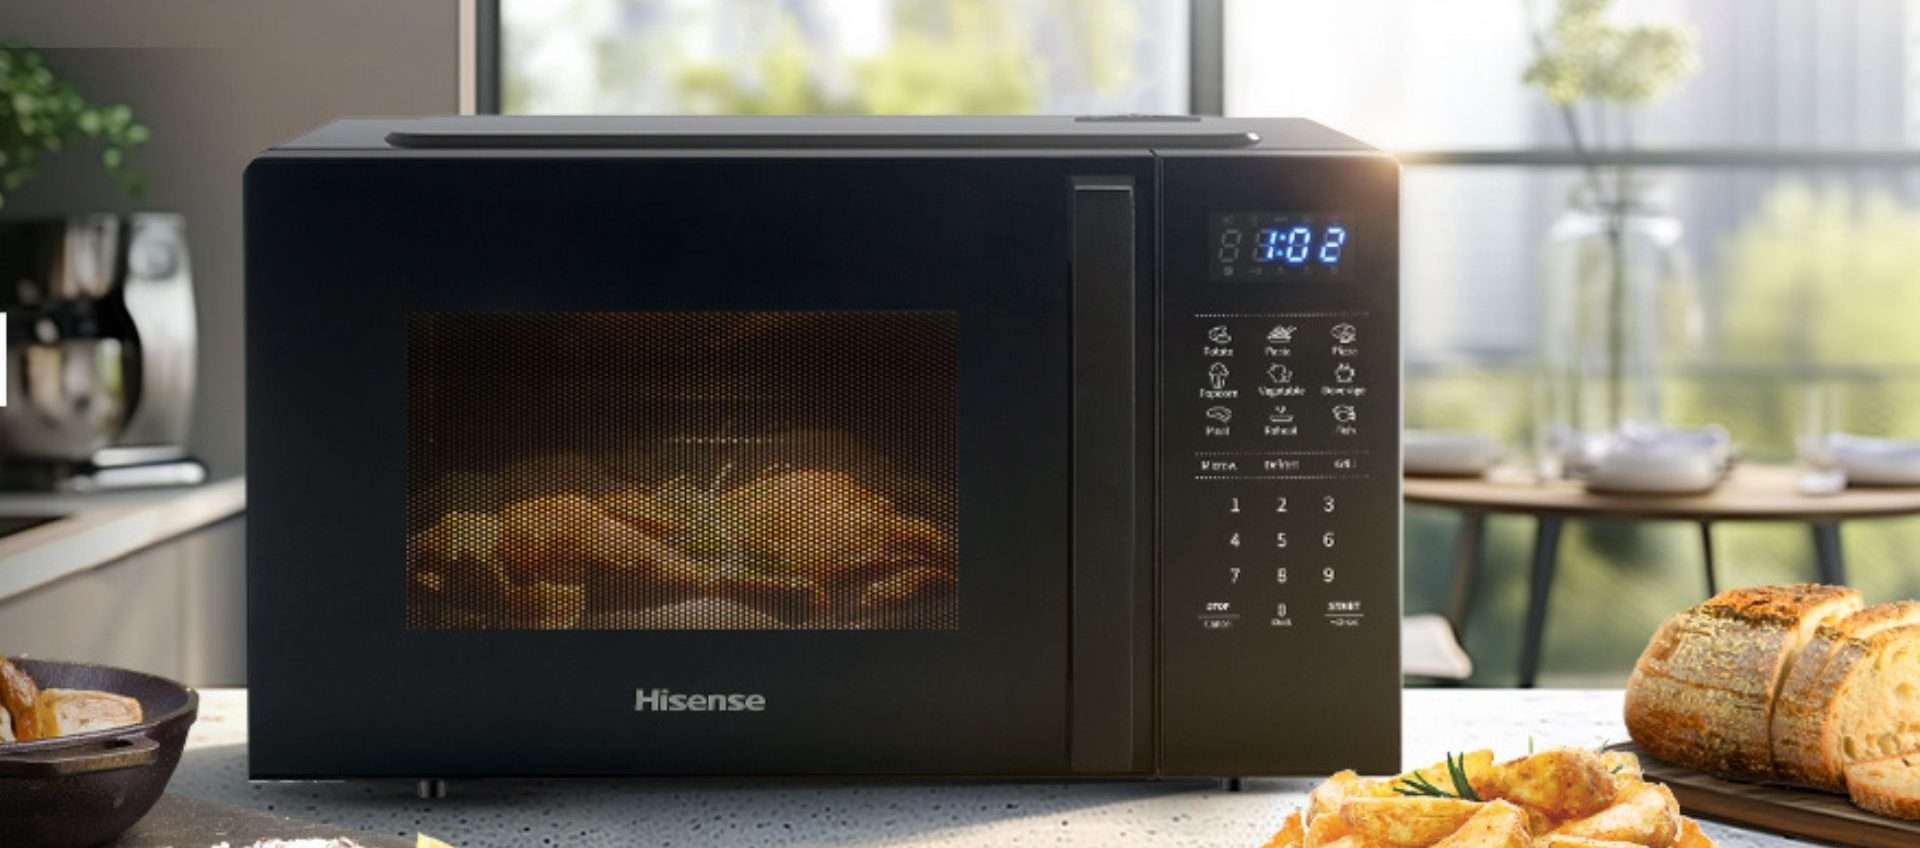 Microonde Hisense in offerta a meno di 100€: c'è anche la funzione grill